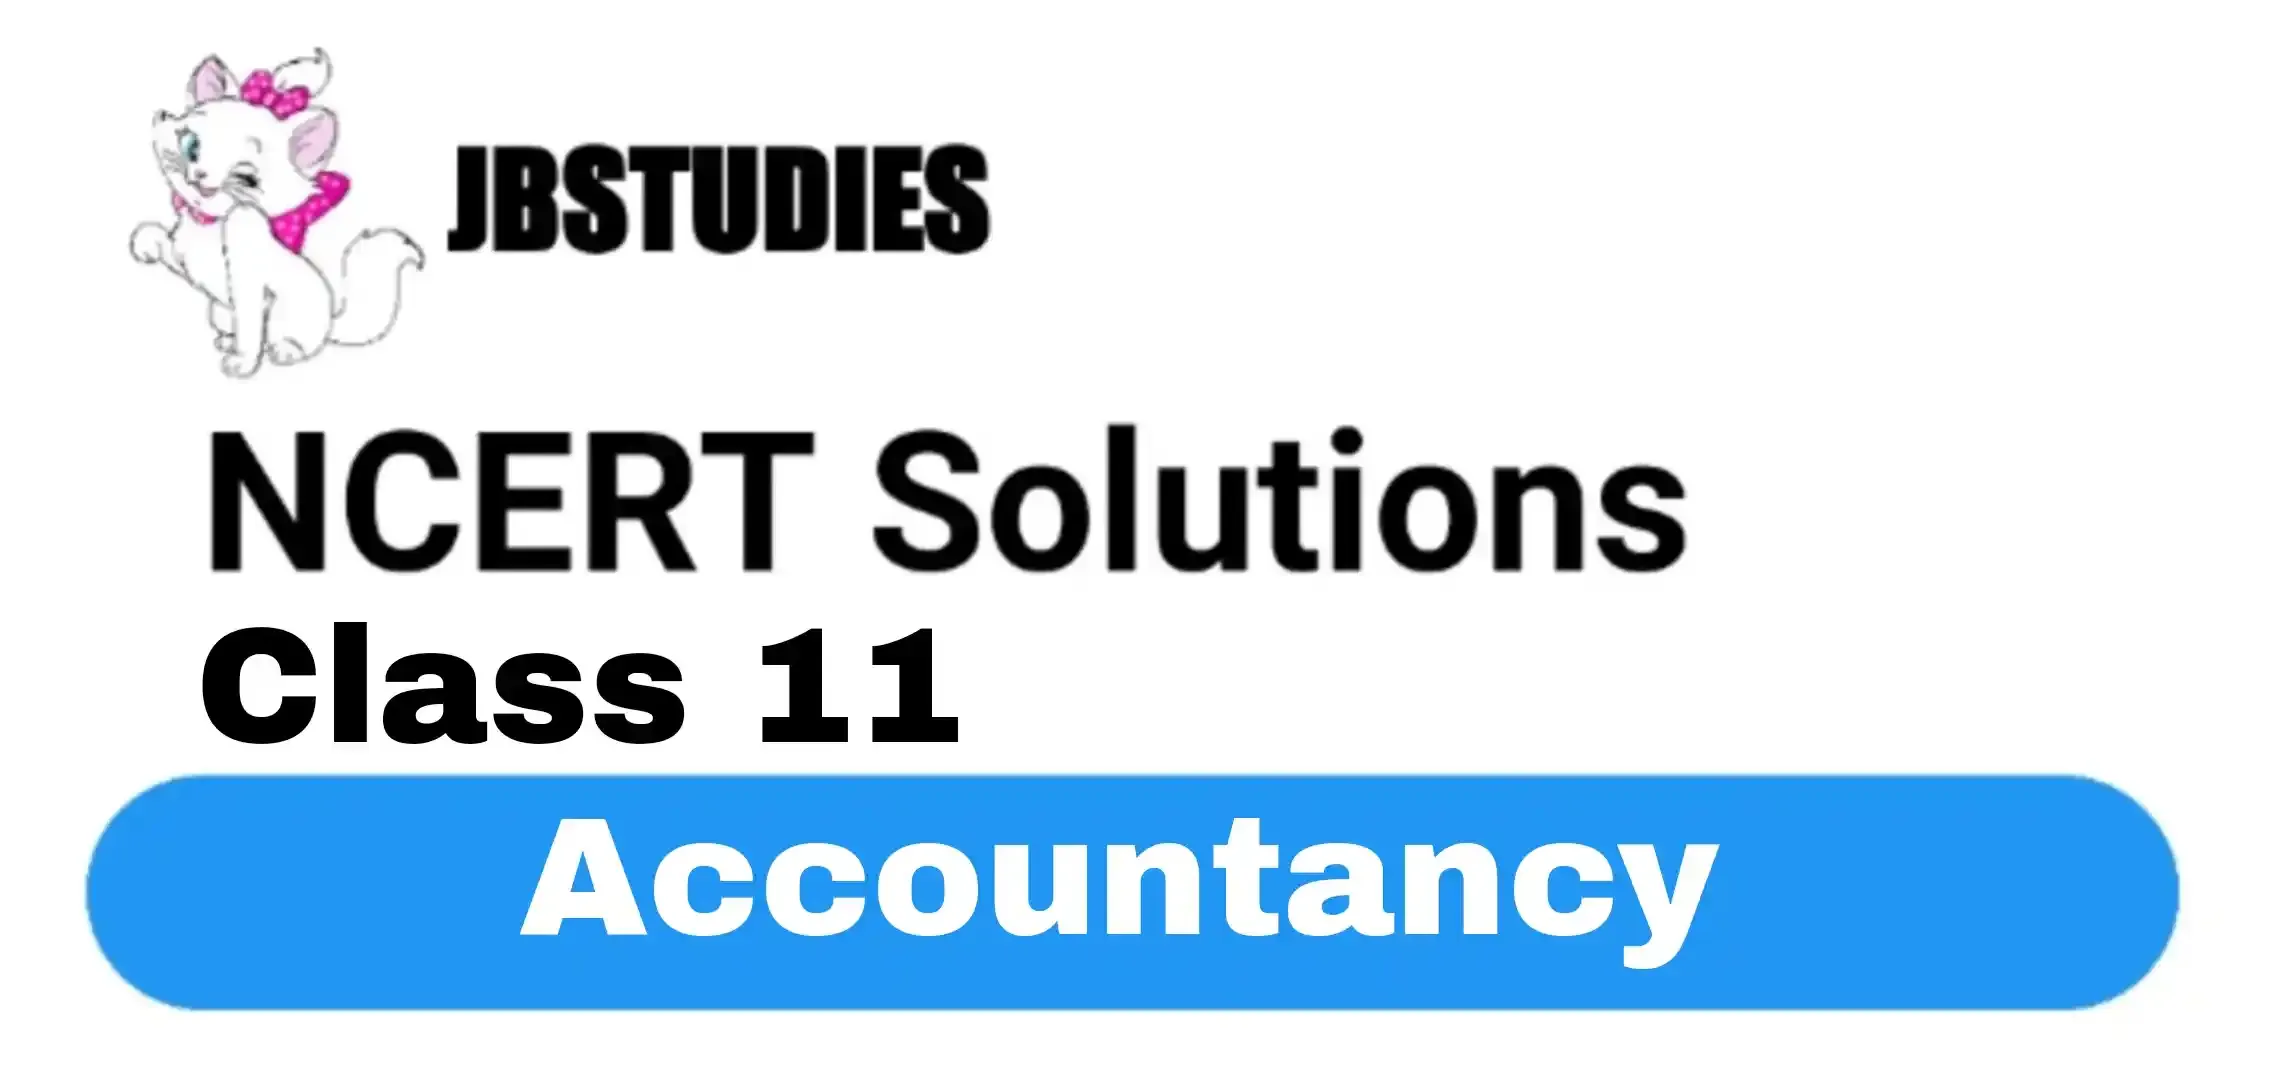 NCERT Solutions Class 11 Accountancy